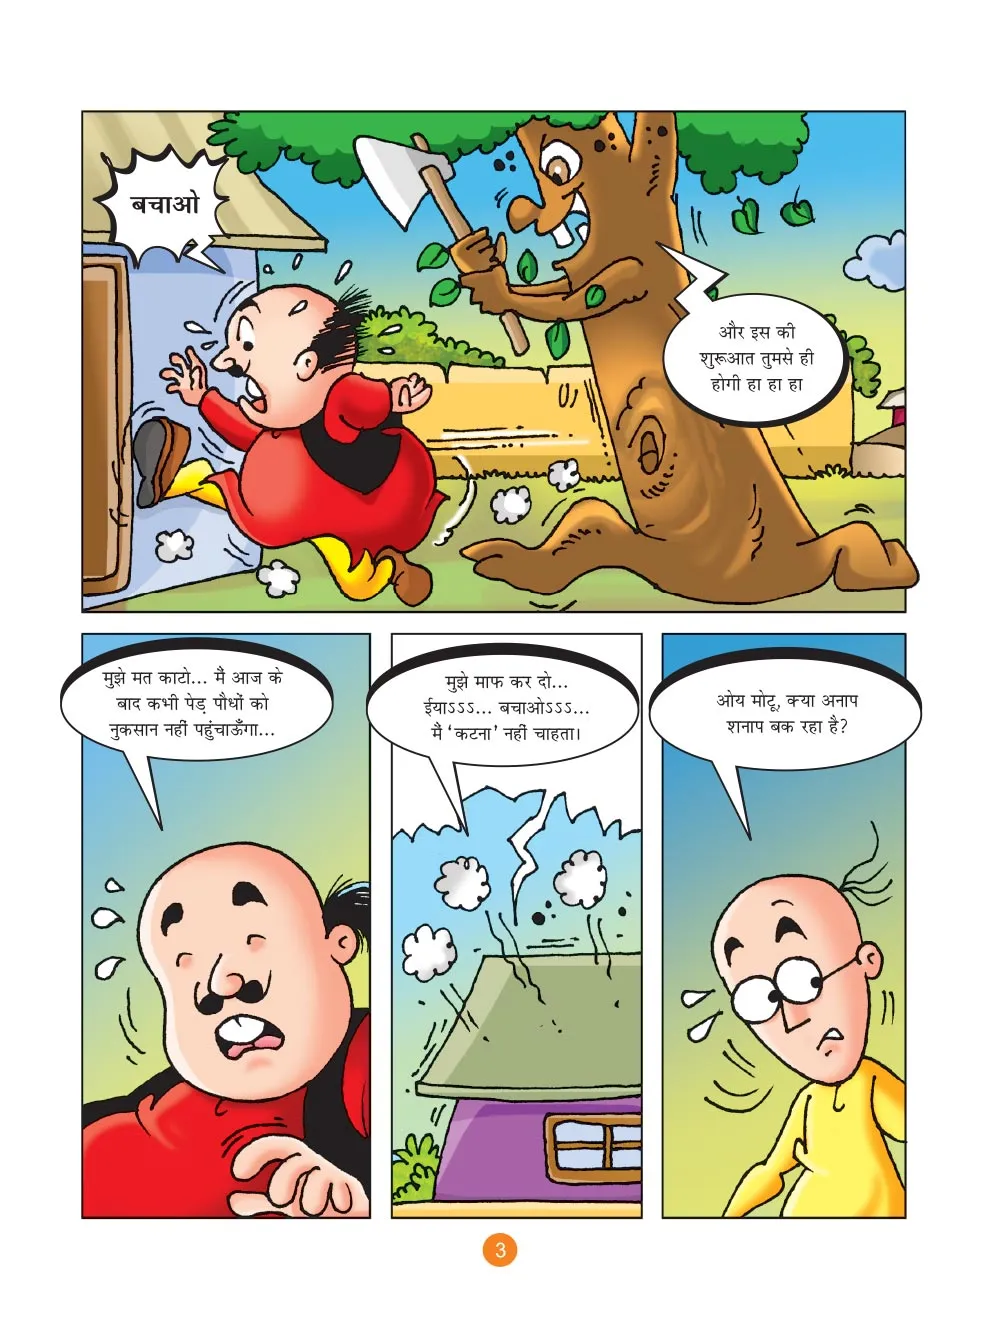 मोटू पतलू की कॉमिक्स : पेड़ लगाओ, जिन्दगी पाओ - Lotpot | Motu Patlu Comics